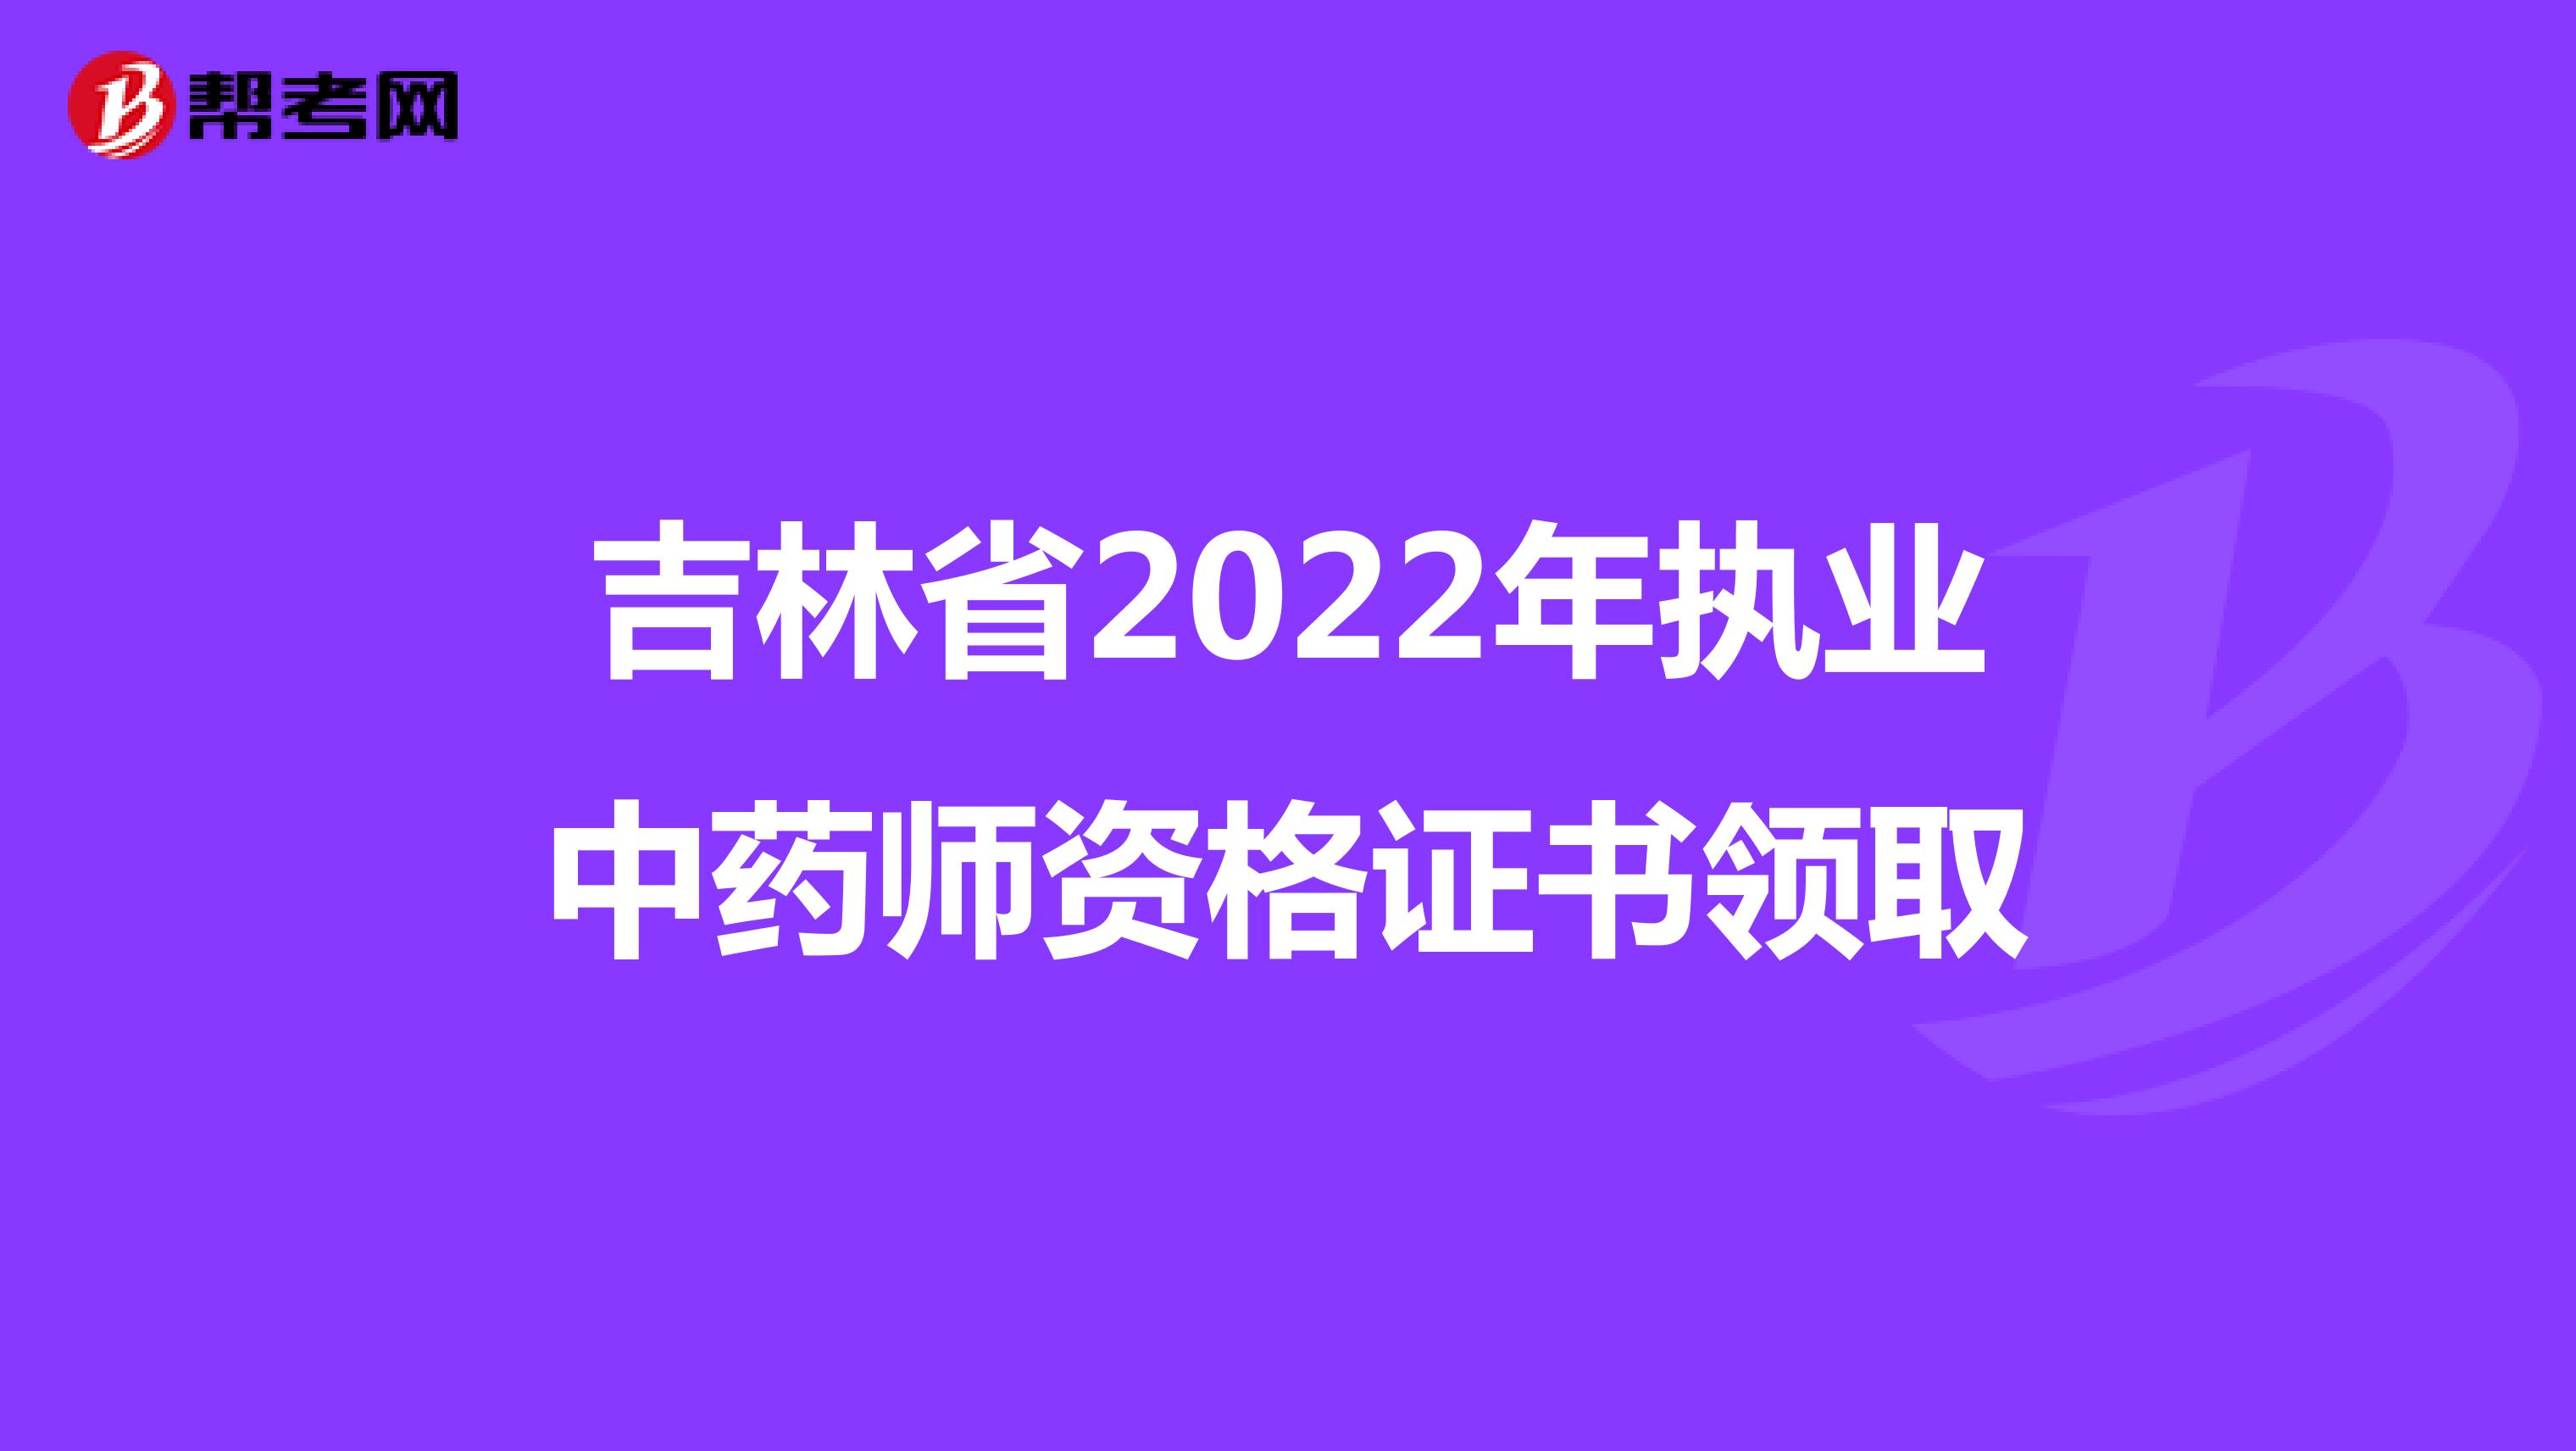 吉林省2022年执业中药师资格证书领取